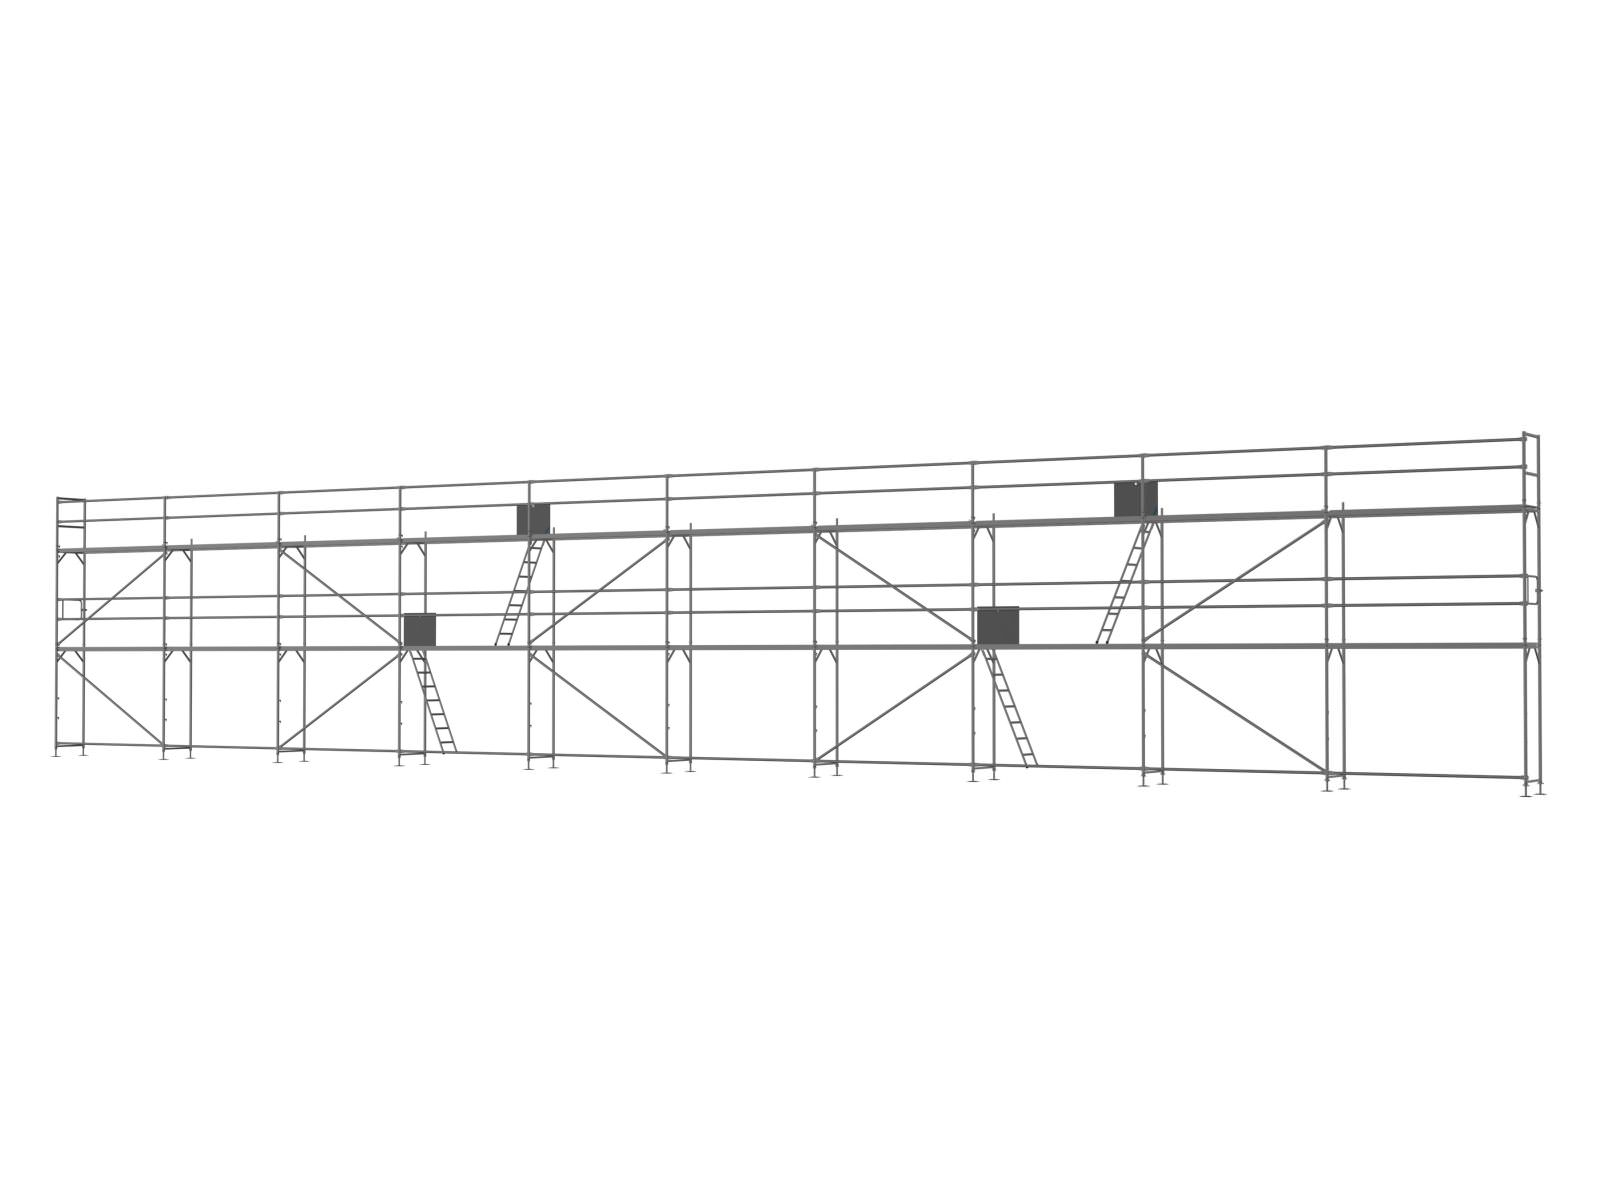 Stahl Traufseitengerüst 180 qm - 3,0 m Felder - 30 m lang - 6 m Arbeitshöhe - Basis-Gerüst inkl. Aufstieg & Befestigung